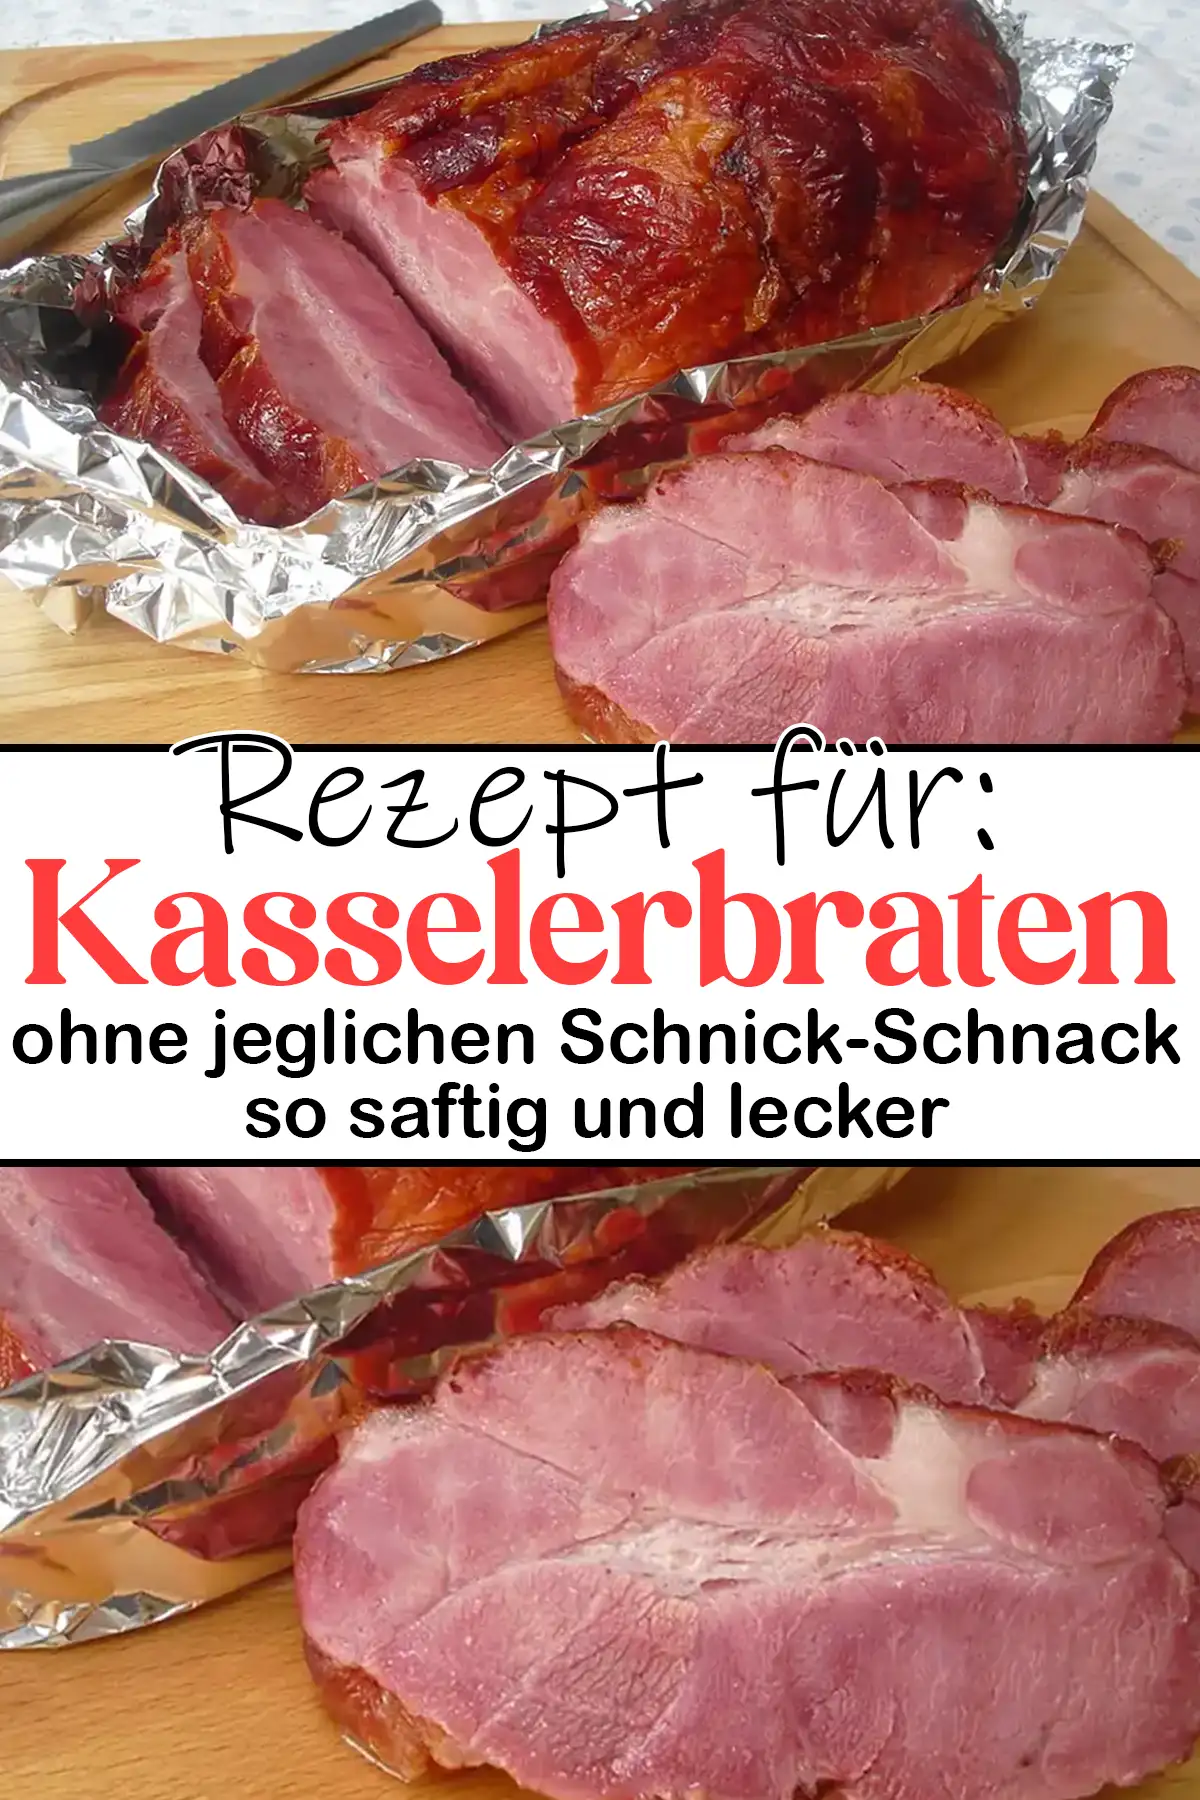 Ganz einfacher Kasselerbraten Rezept ohne jeglichen Schnick-Schnack